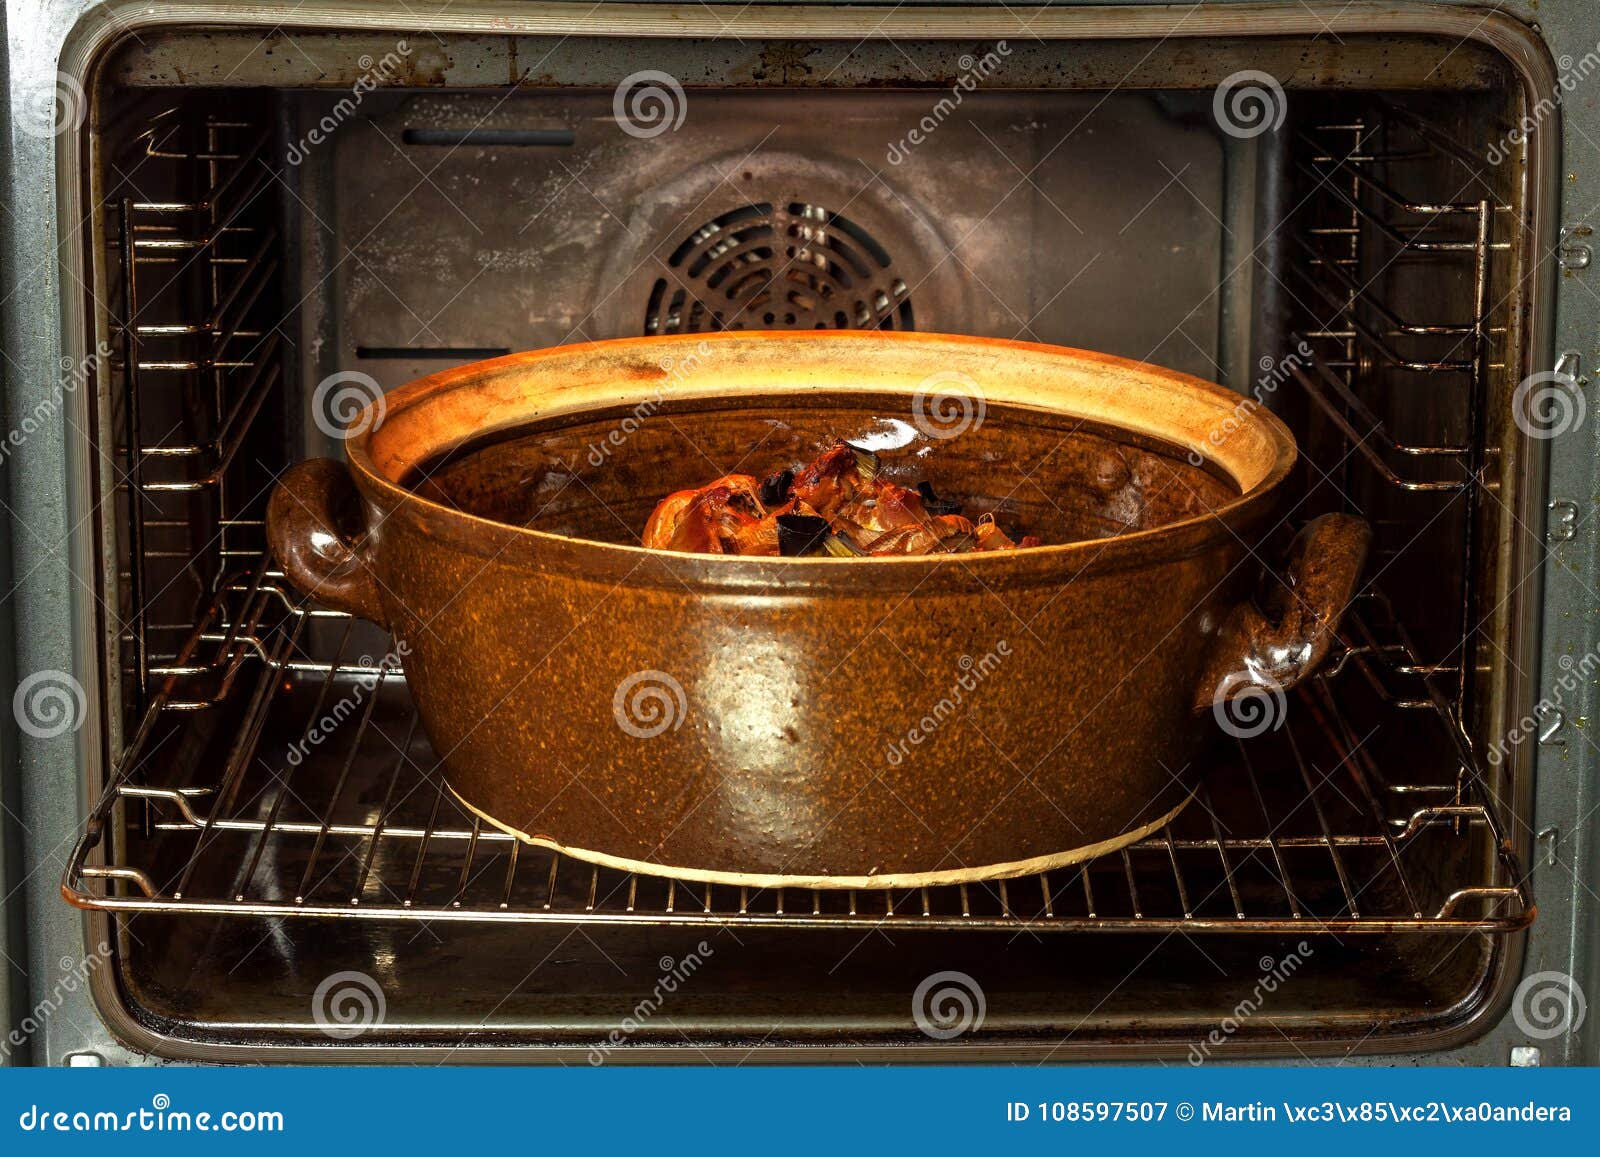 Можно ставить тарелку в духовку. Кастрюля для духовки. Мясо в глиняной посуде в духовке. Блюда в керамической кастрюле в духовке. Говядина в глиняной посуде в духовке.